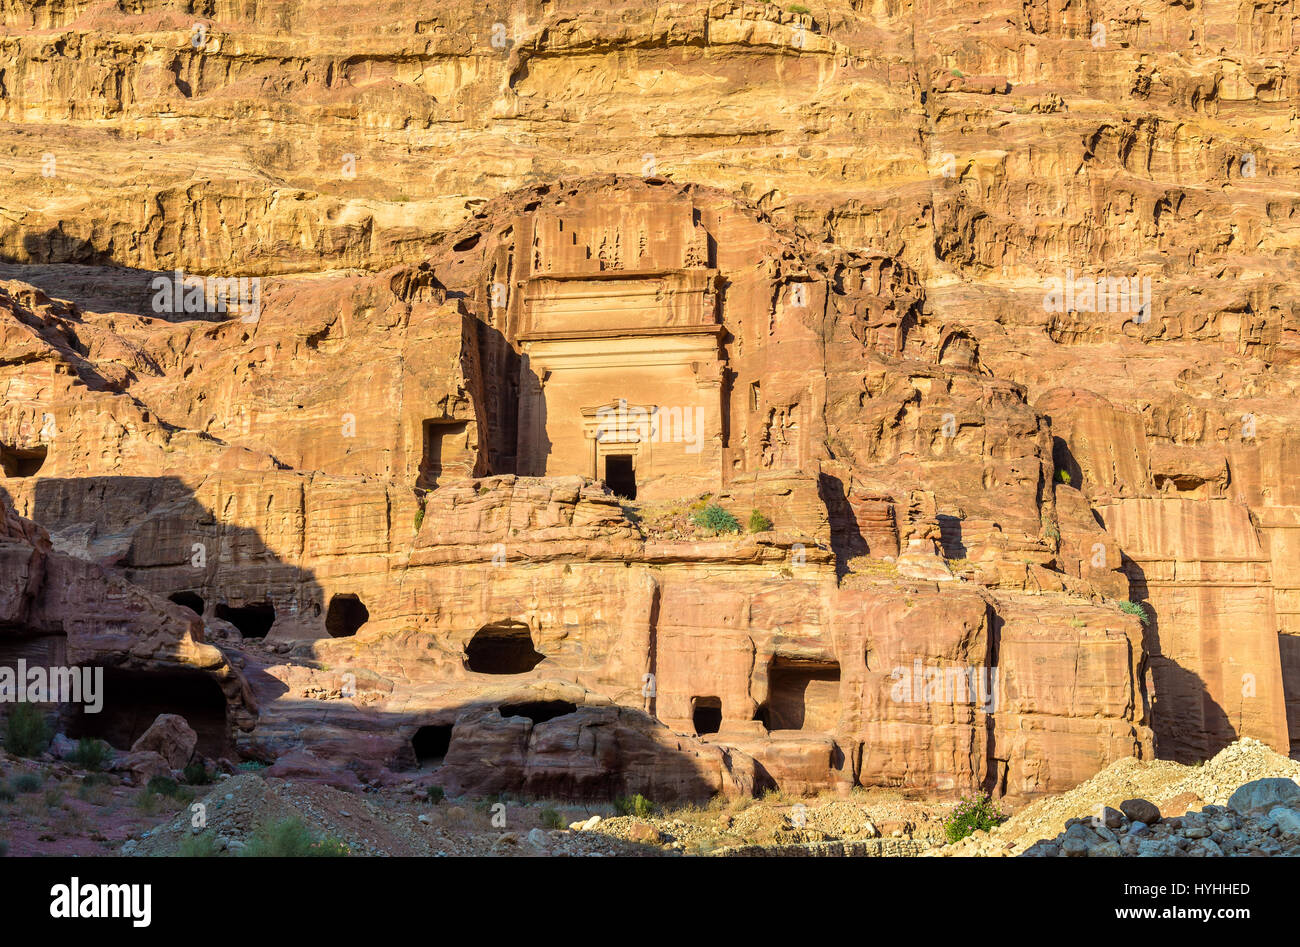 vaskepulver Enig med Virksomhedsbeskrivelse Aneisho Tomb at Petra. UNESCO Heritage Site in Jordan Stock Photo - Alamy